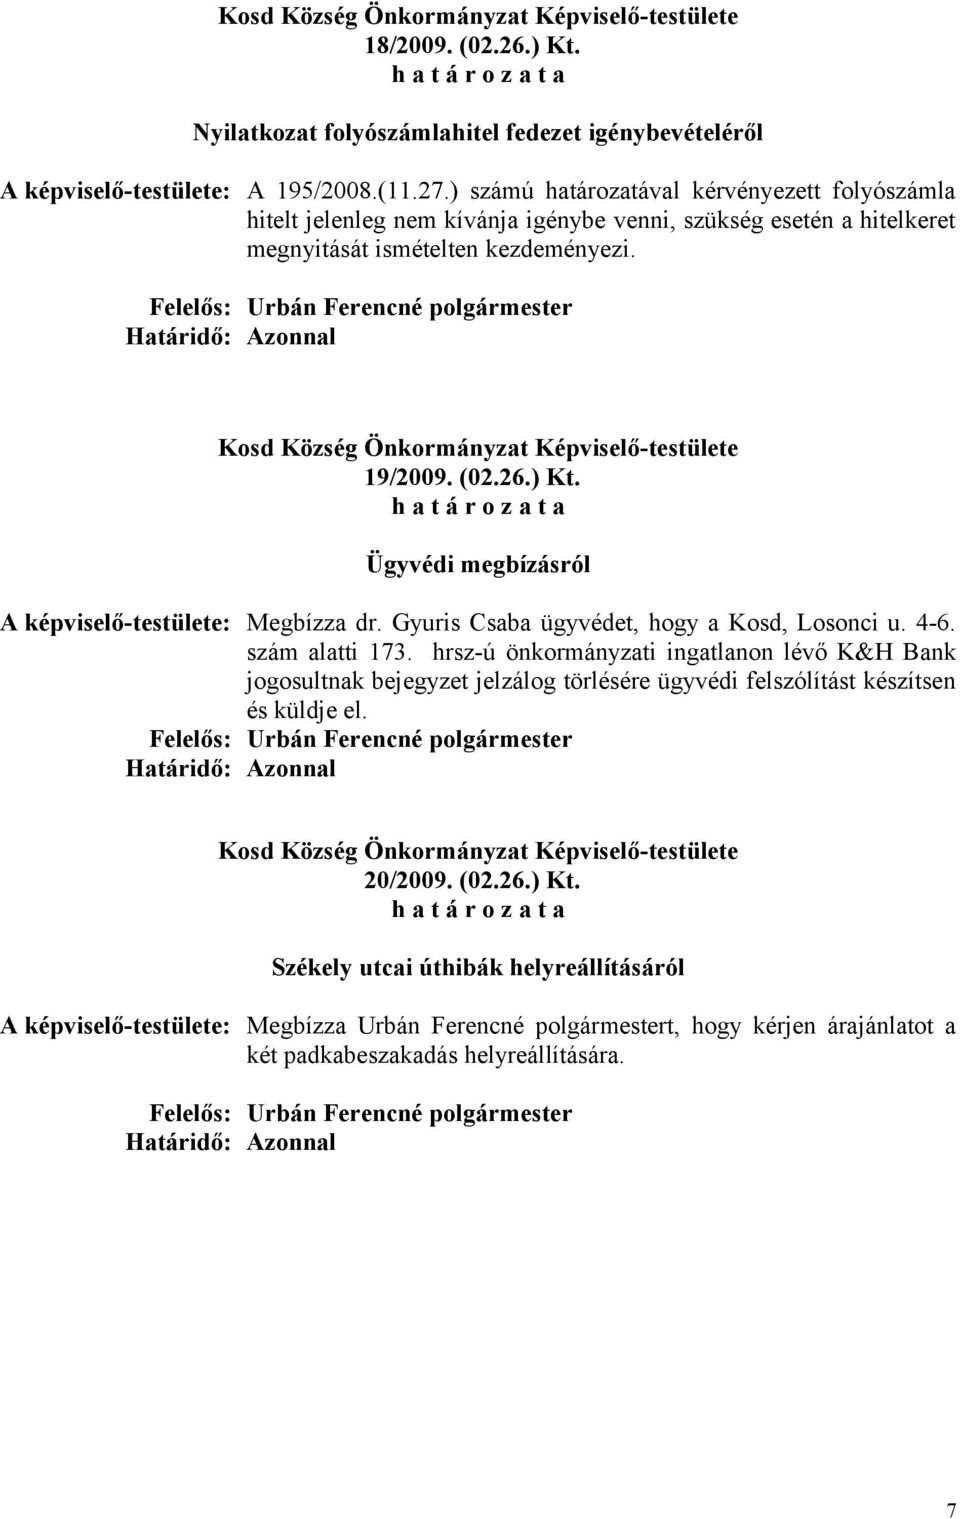 Ügyvédi megbízásról A képviselő-testülete: Megbízza dr. Gyuris Csaba ügyvédet, hogy a Kosd, Losonci u. 4-6. szám alatti 173.